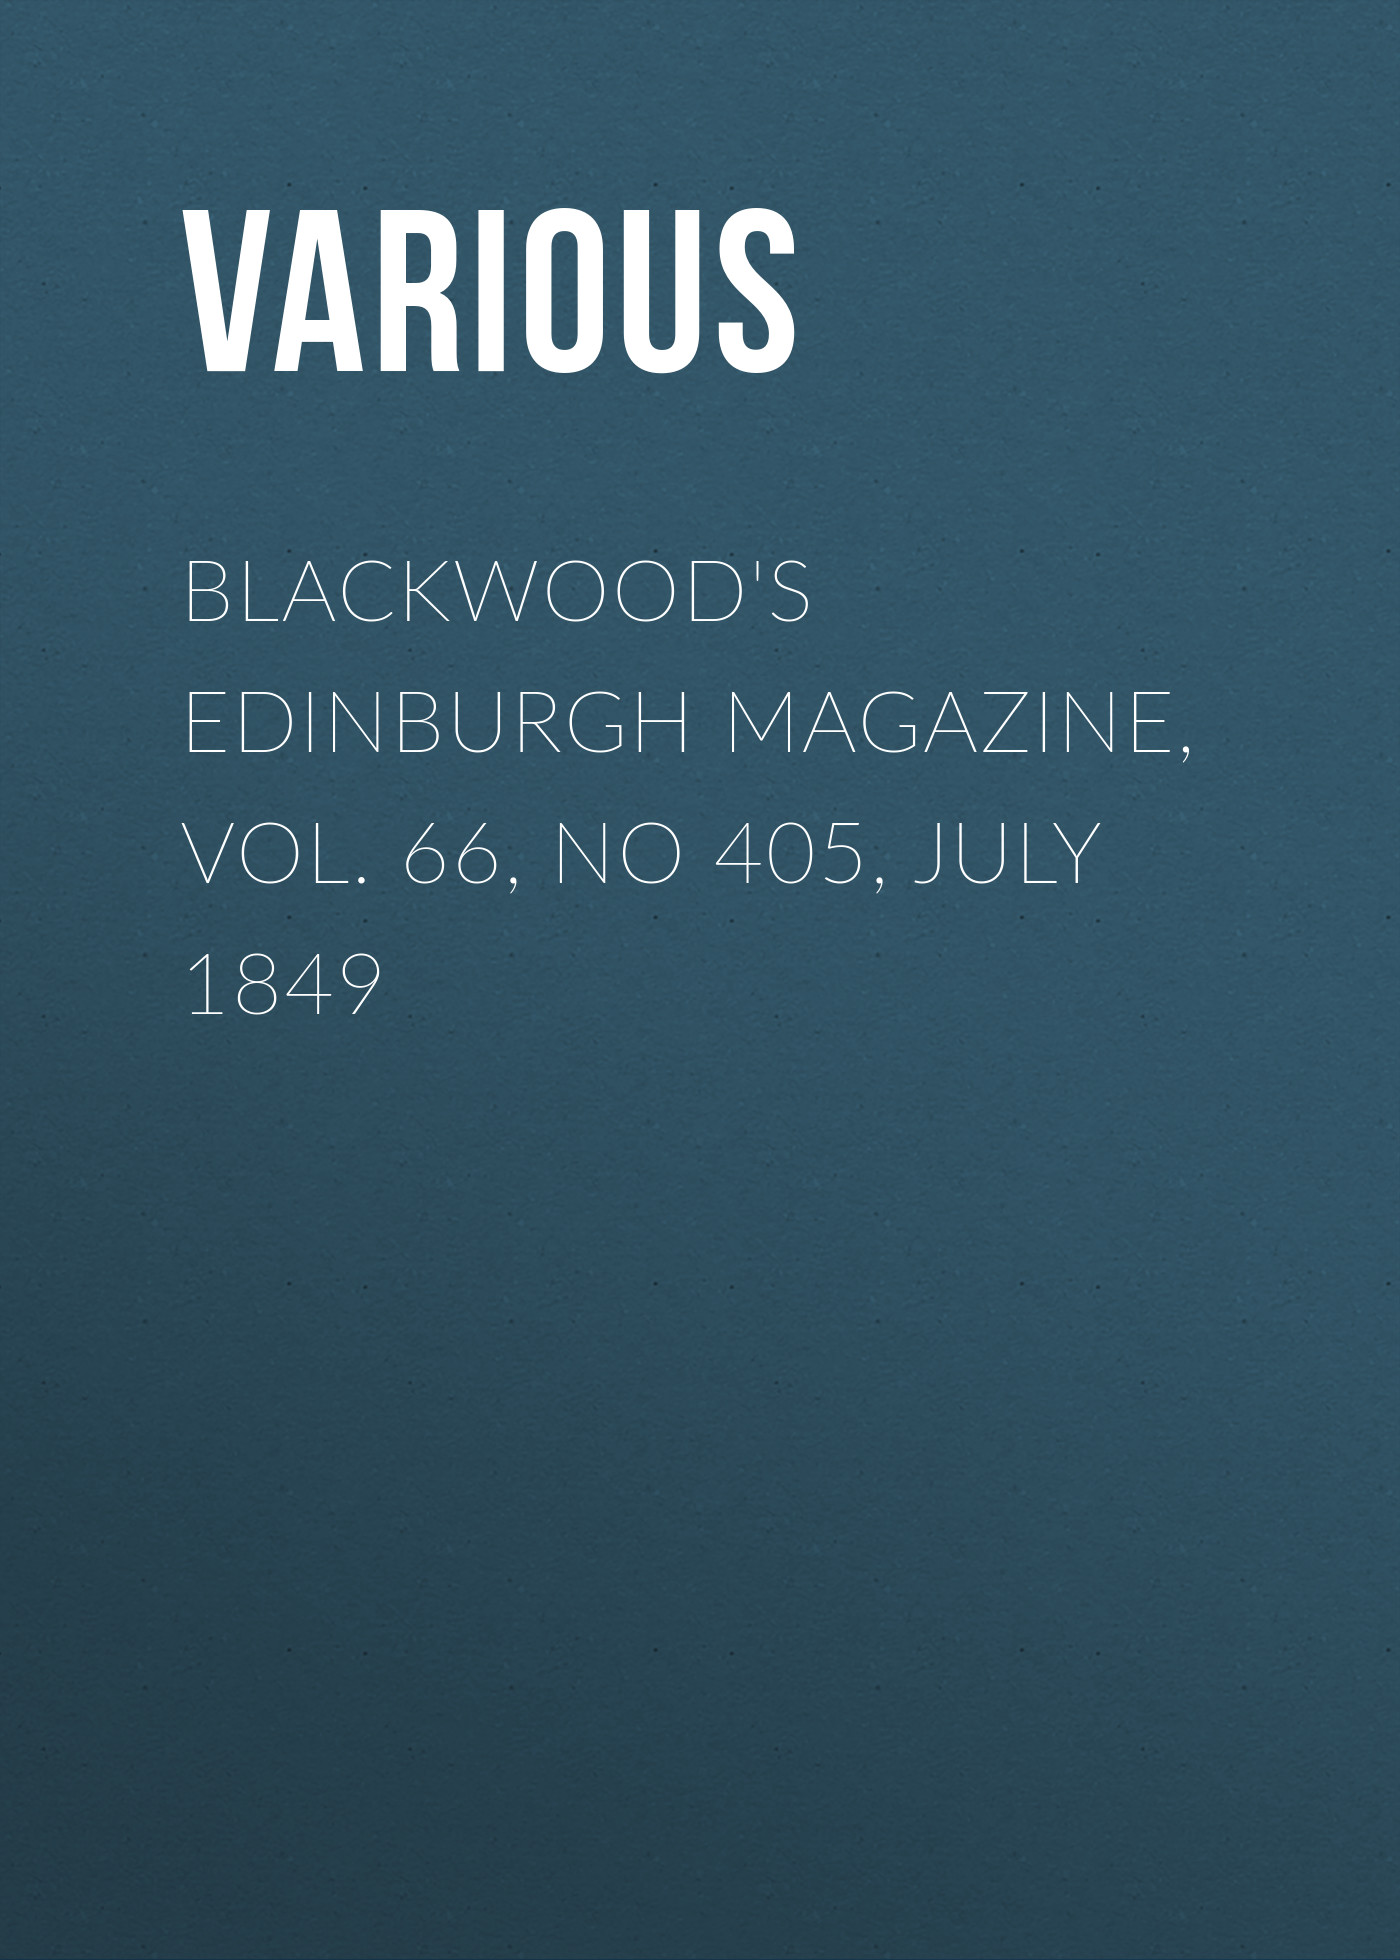 Книга Blackwood's Edinburgh Magazine, Vol. 66, No 405, July 1849 из серии , созданная  Various, может относится к жанру Журналы, Зарубежная образовательная литература, Книги о Путешествиях. Стоимость электронной книги Blackwood's Edinburgh Magazine, Vol. 66, No 405, July 1849 с идентификатором 25569391 составляет 0 руб.